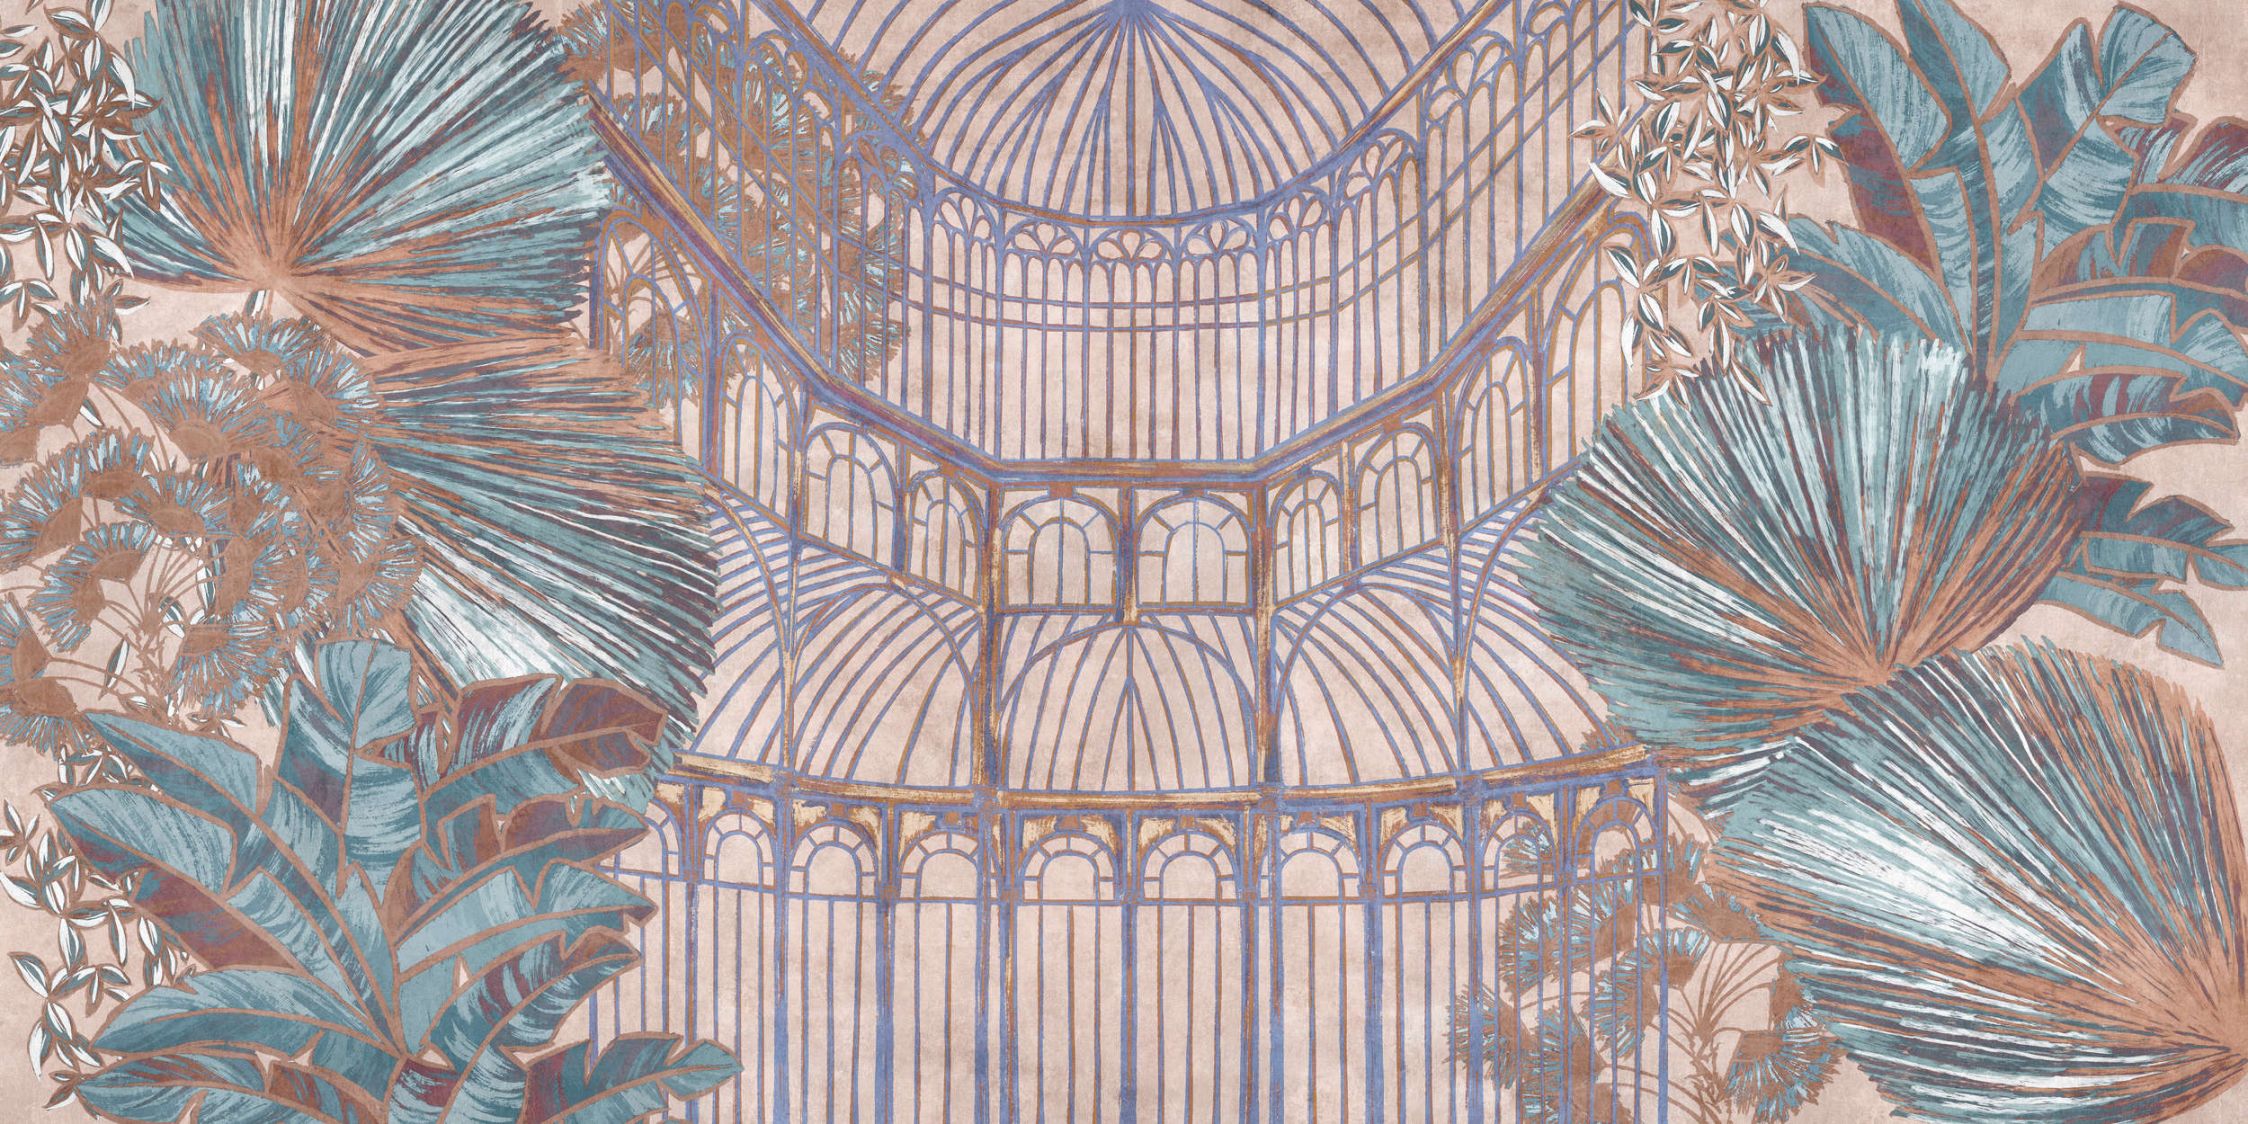             Papel pintado »orangerie 2« - Pabellón con hojas de la jungla sobre textura de yeso vintage - rosa, turquesa | Tela no tejida lisa, ligeramente nacarada y brillante
        